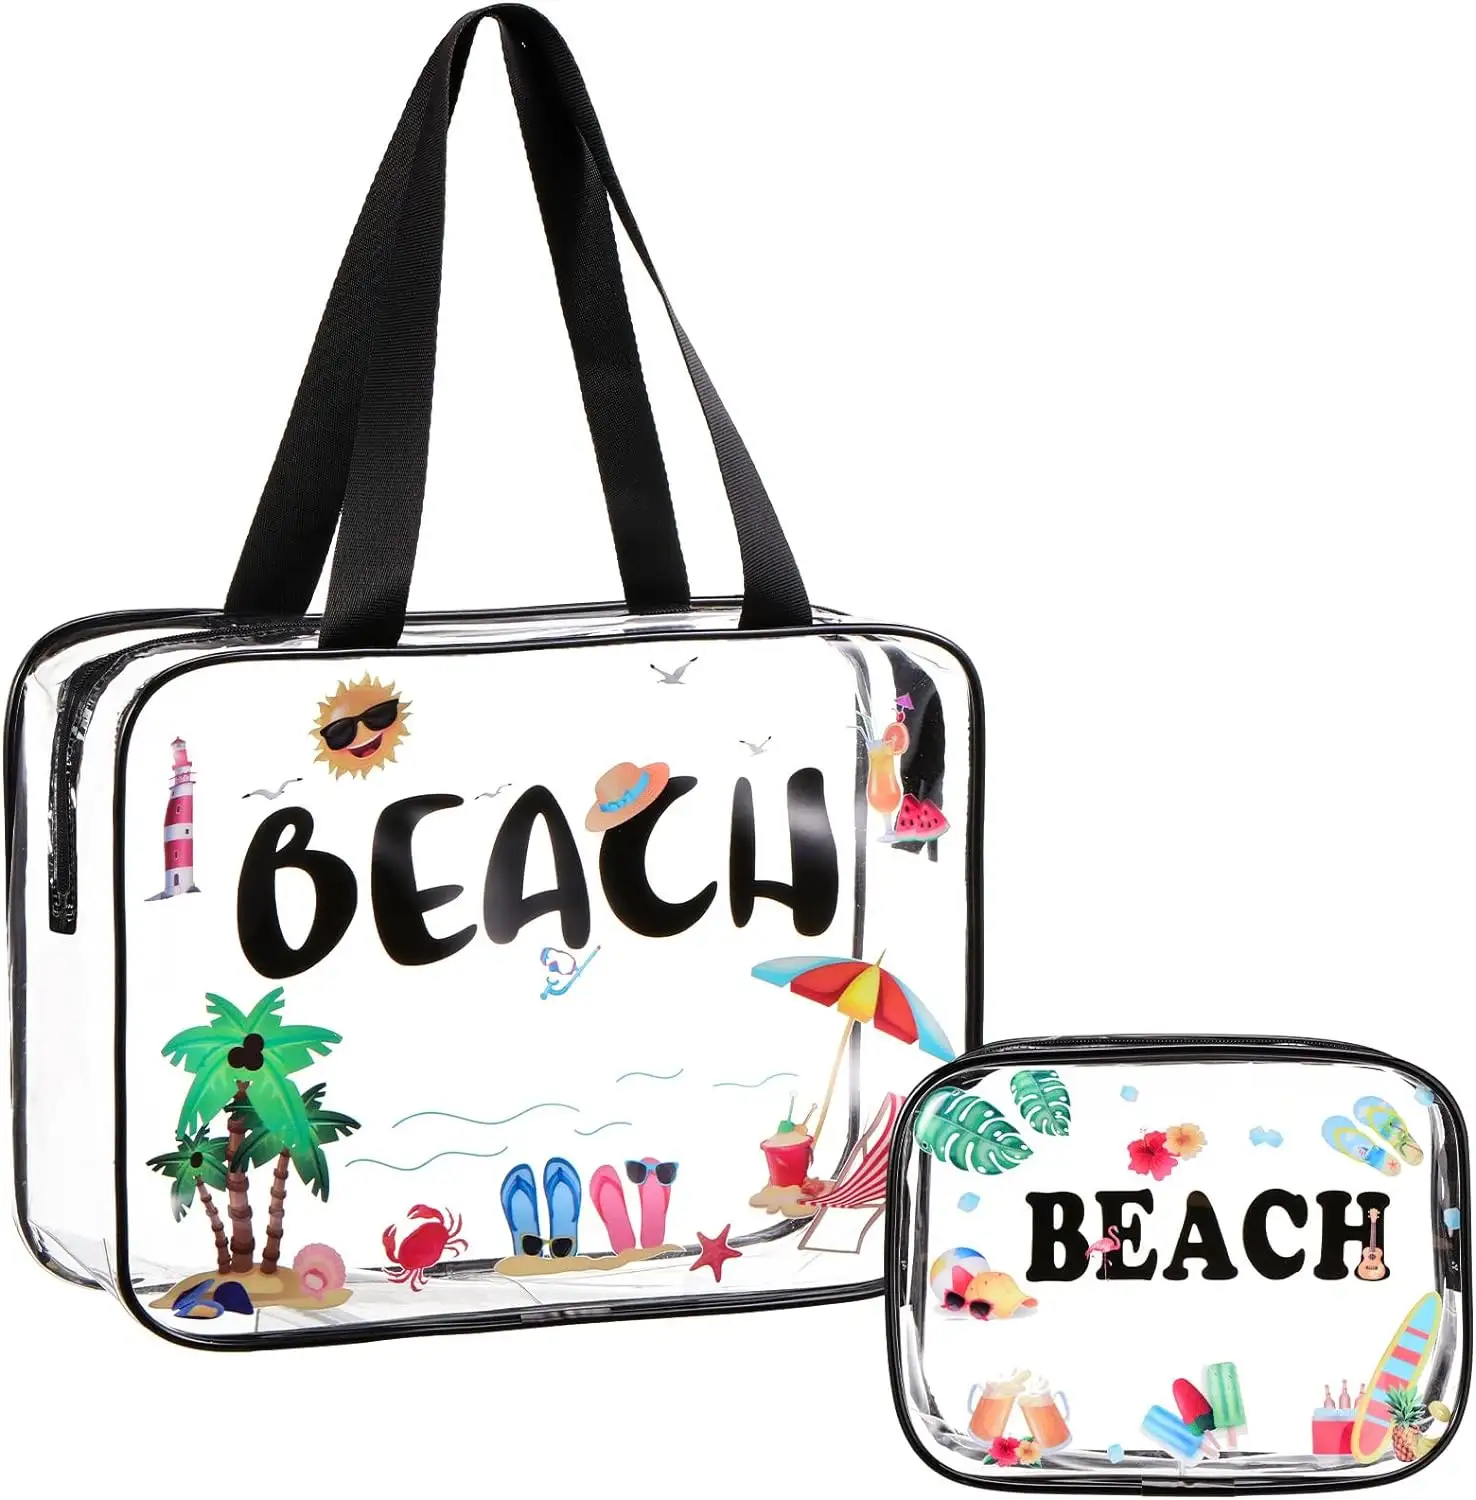 समुद्र तट उपहारों के लिए जिपर पीवीसी वॉटरप्रूफ ट्रैवल मेकअप बैग के साथ क्लियर मेकअप बैग